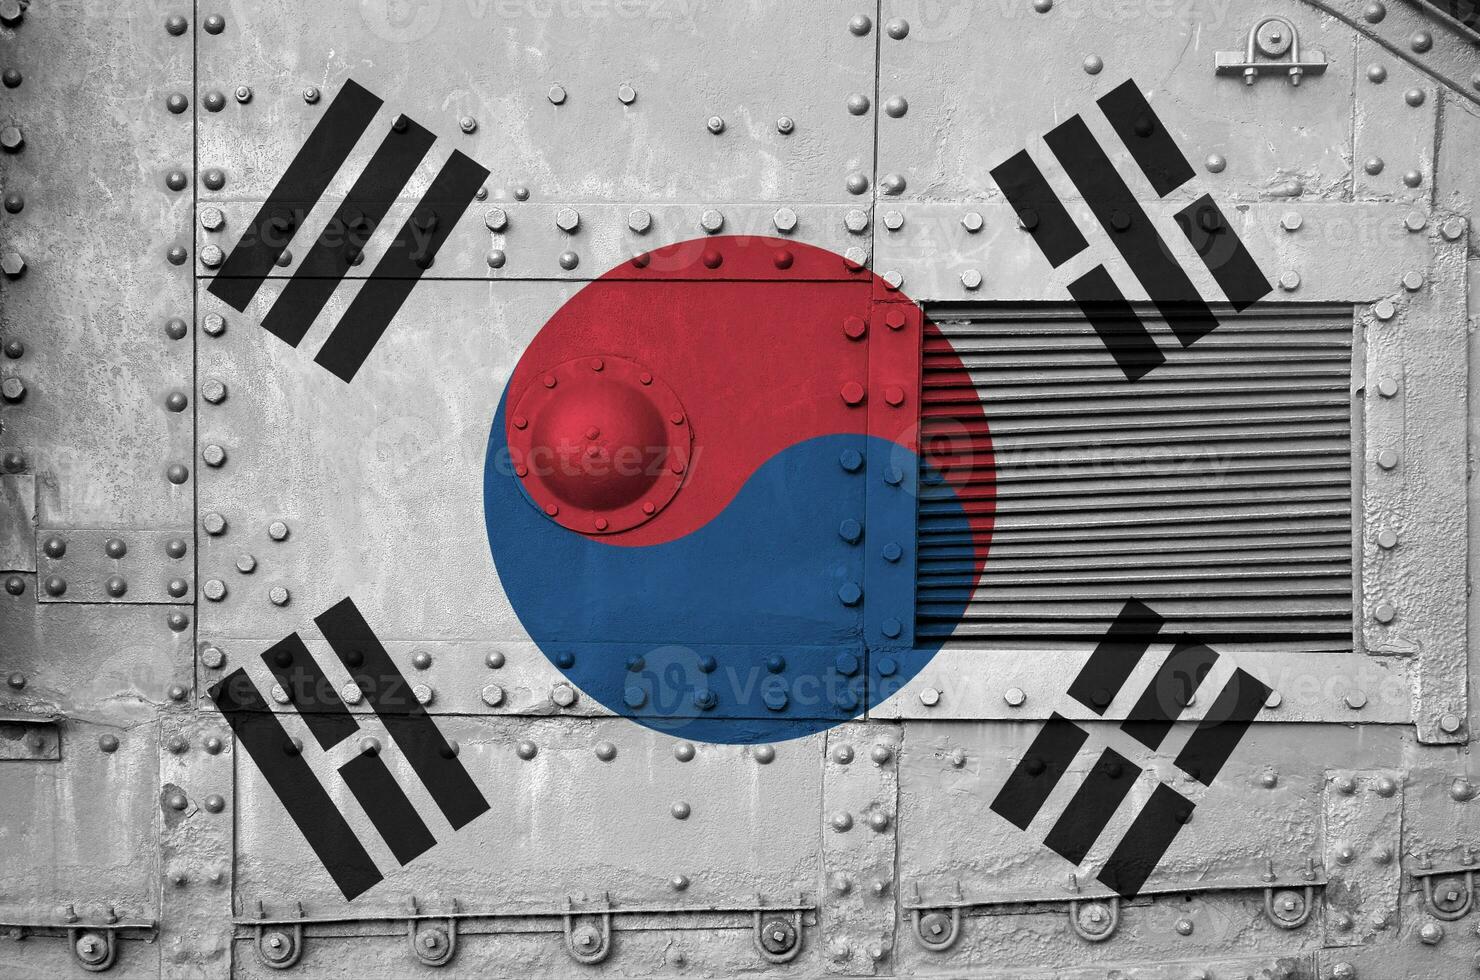 Sud Corea bandiera raffigurato su lato parte di militare blindato serbatoio avvicinamento. esercito forze concettuale sfondo foto